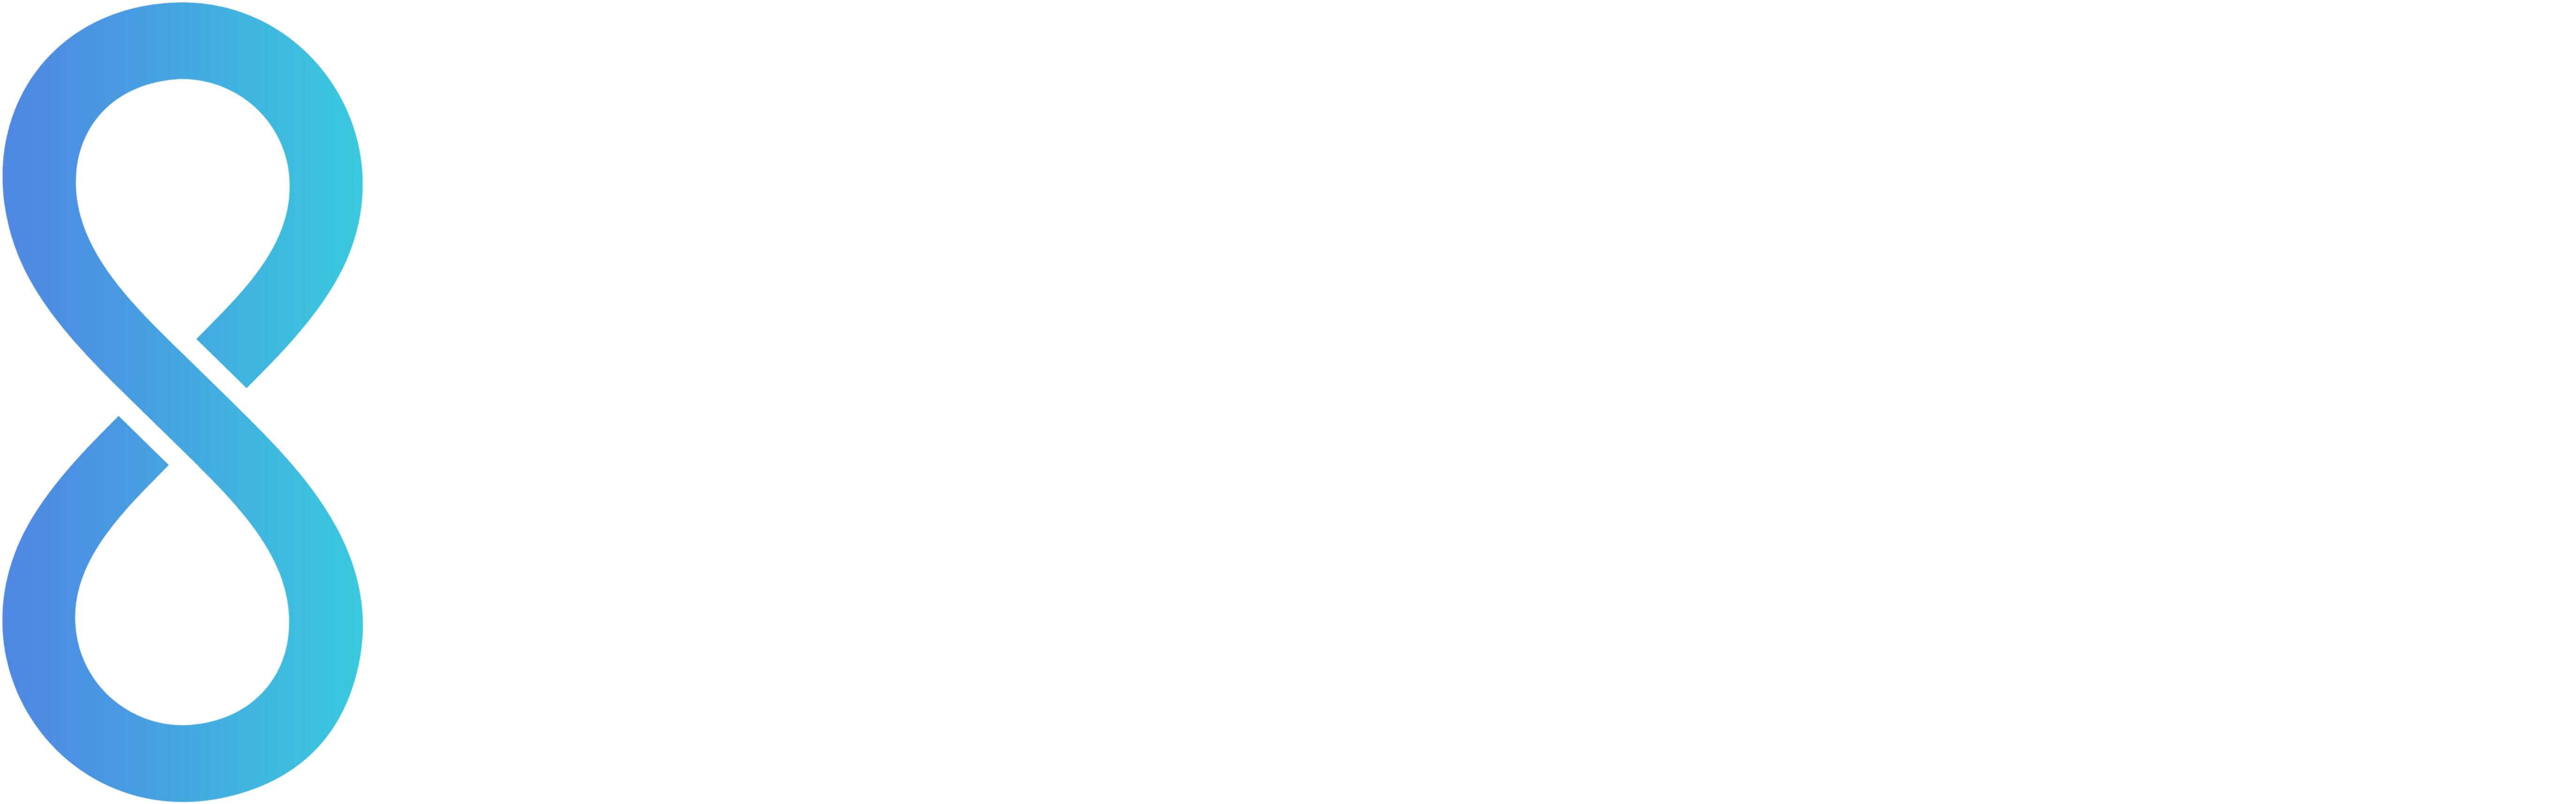 Startup Universe white logo